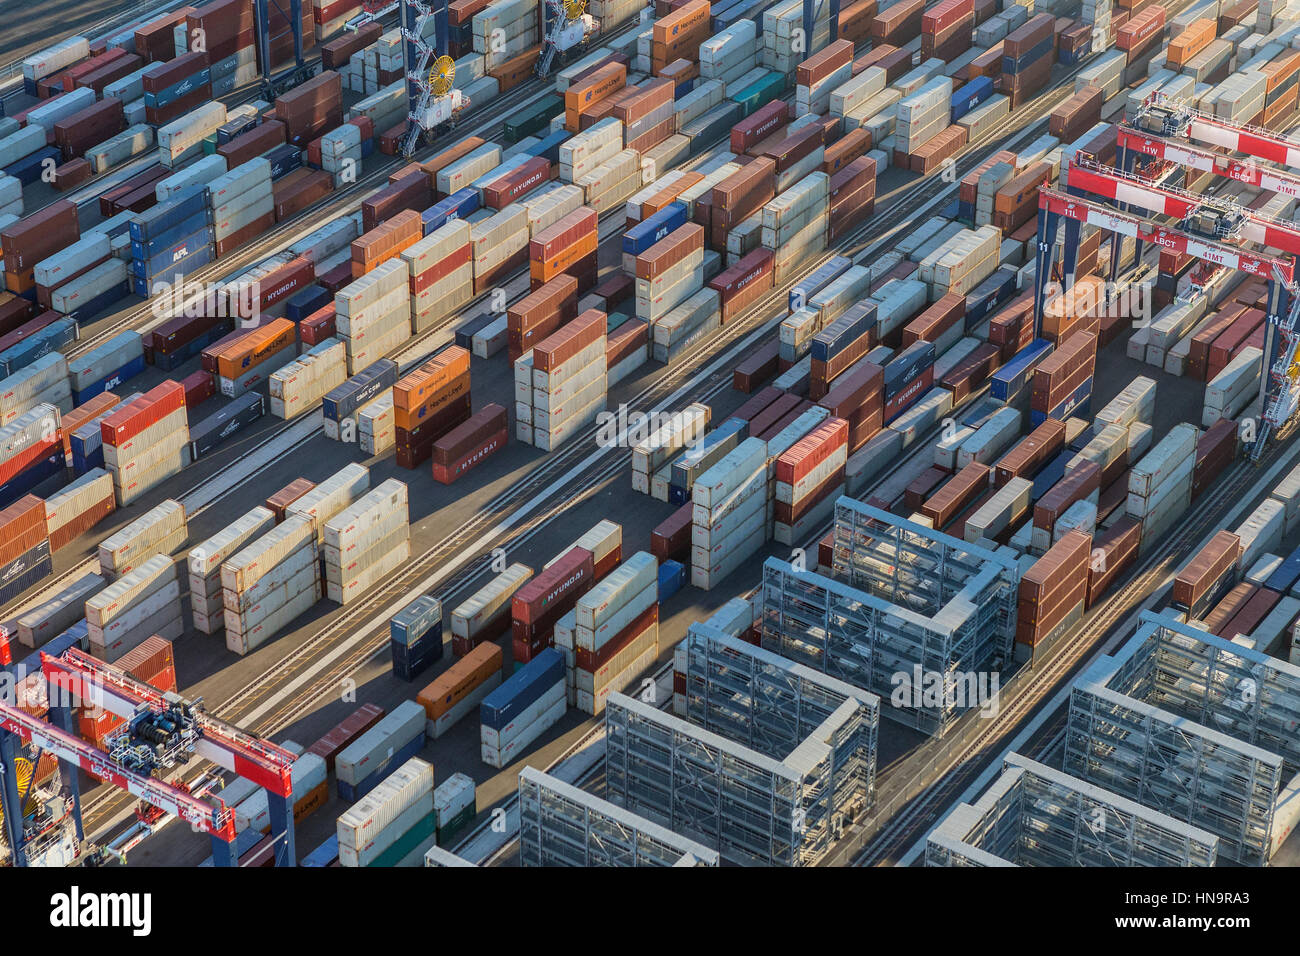 Los Angeles, California, USA - Agosto 16, 2016: Por la tarde vista aérea de carga los contenedores apilados en los muelles. Foto de stock